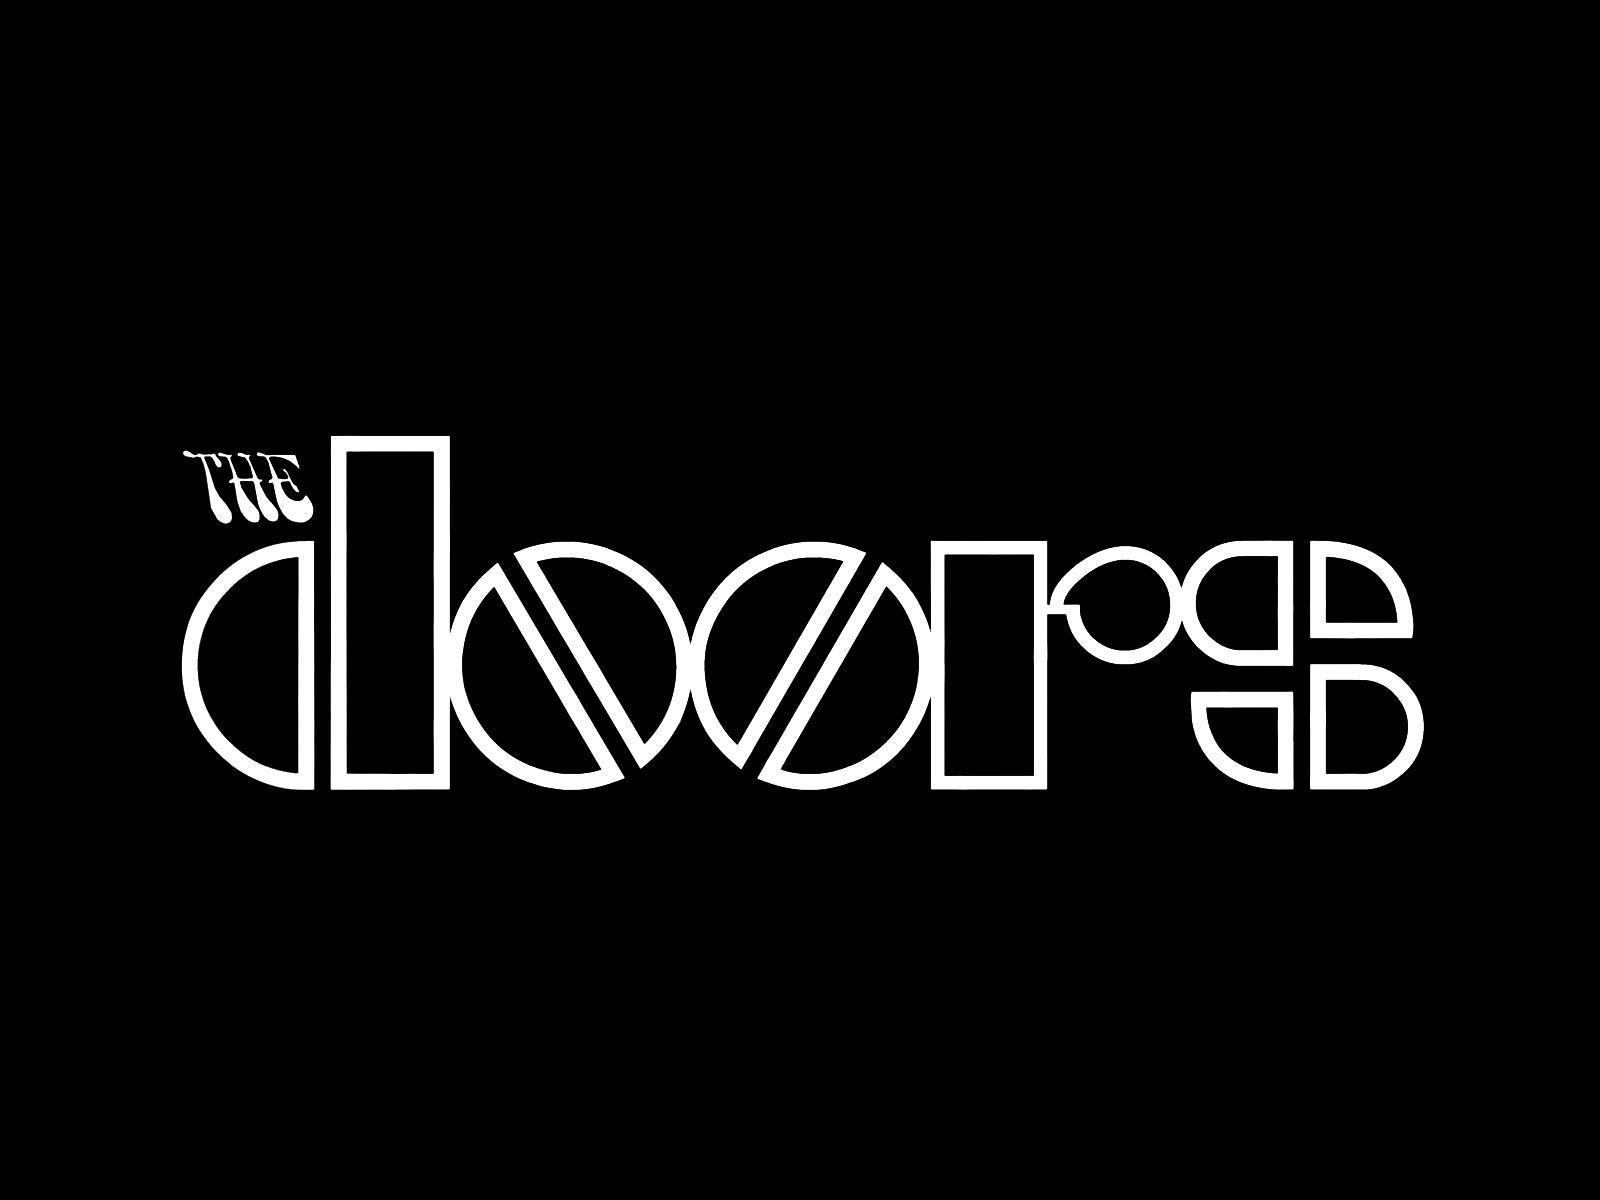 The Doors wallpaper by 2007551  Download on ZEDGE  3525